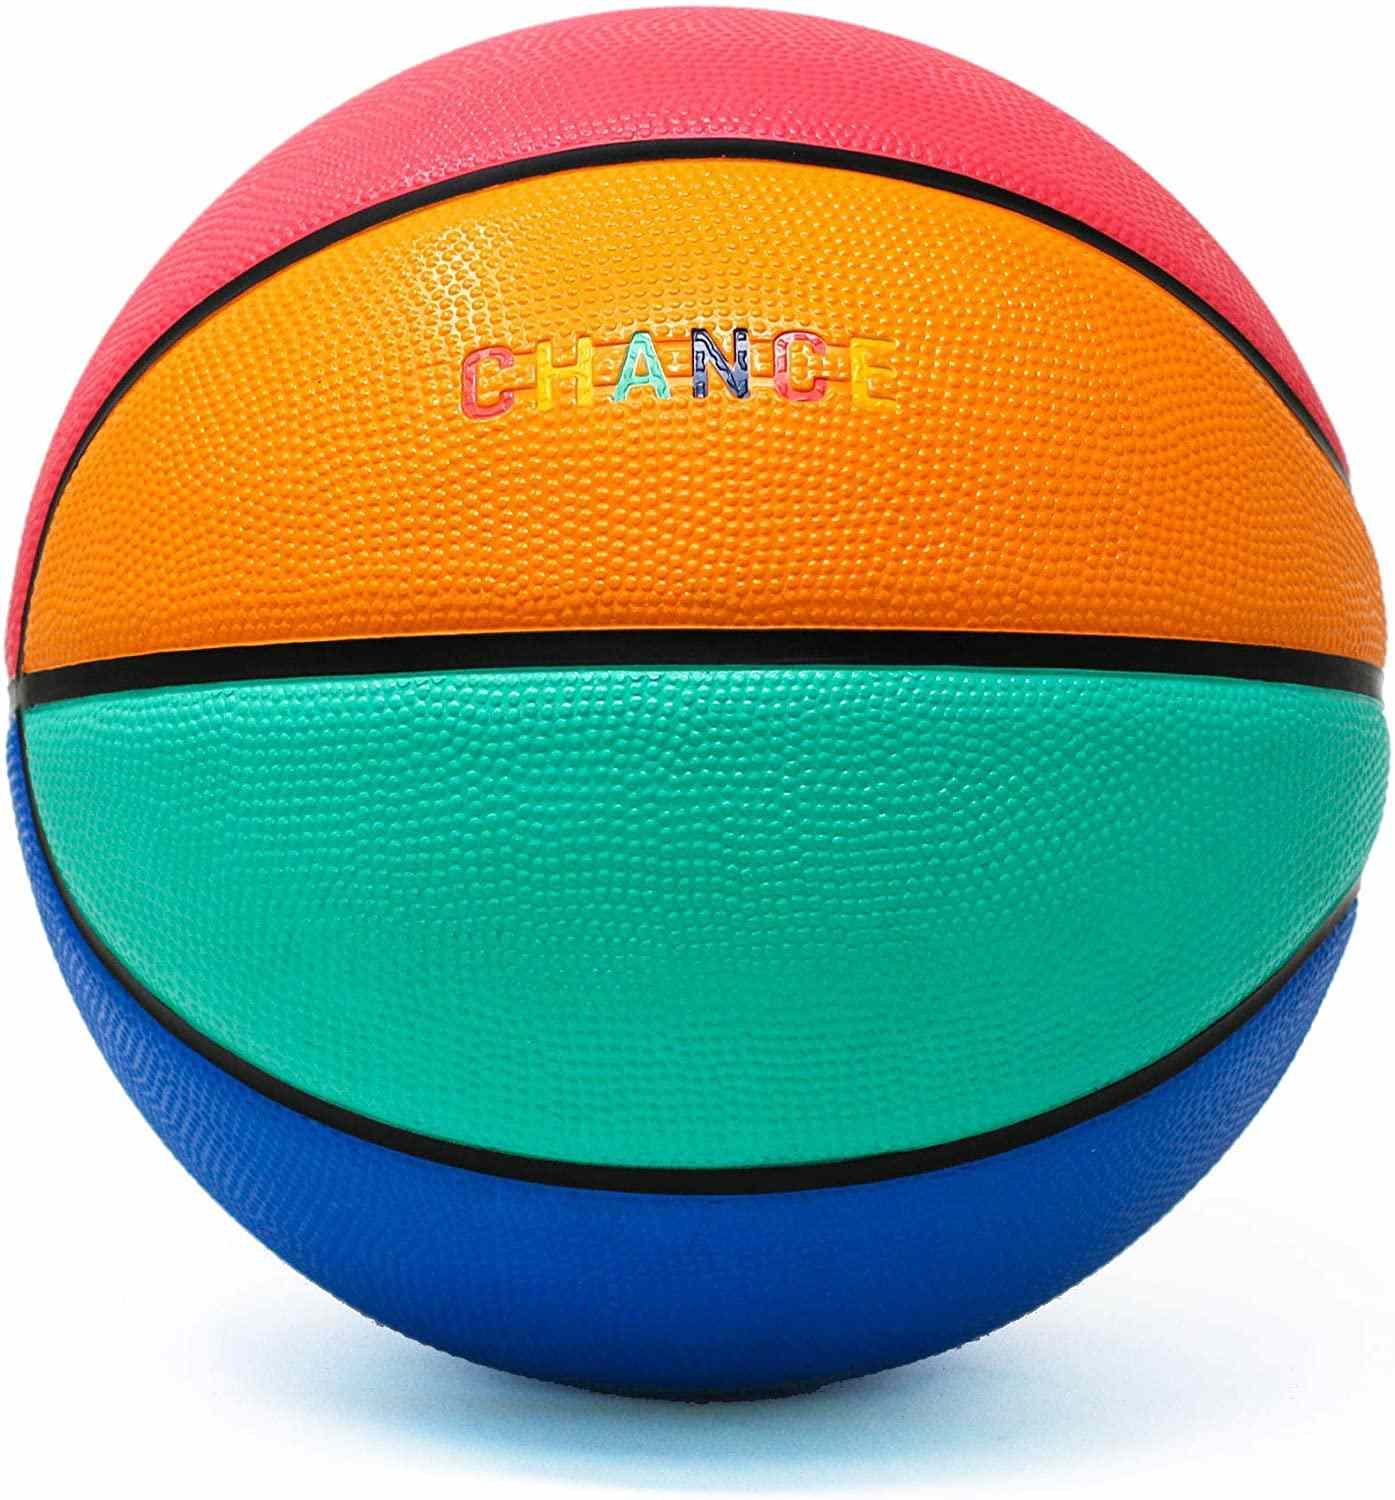 Chance Rubber Outdoor / Indoor Basketbal